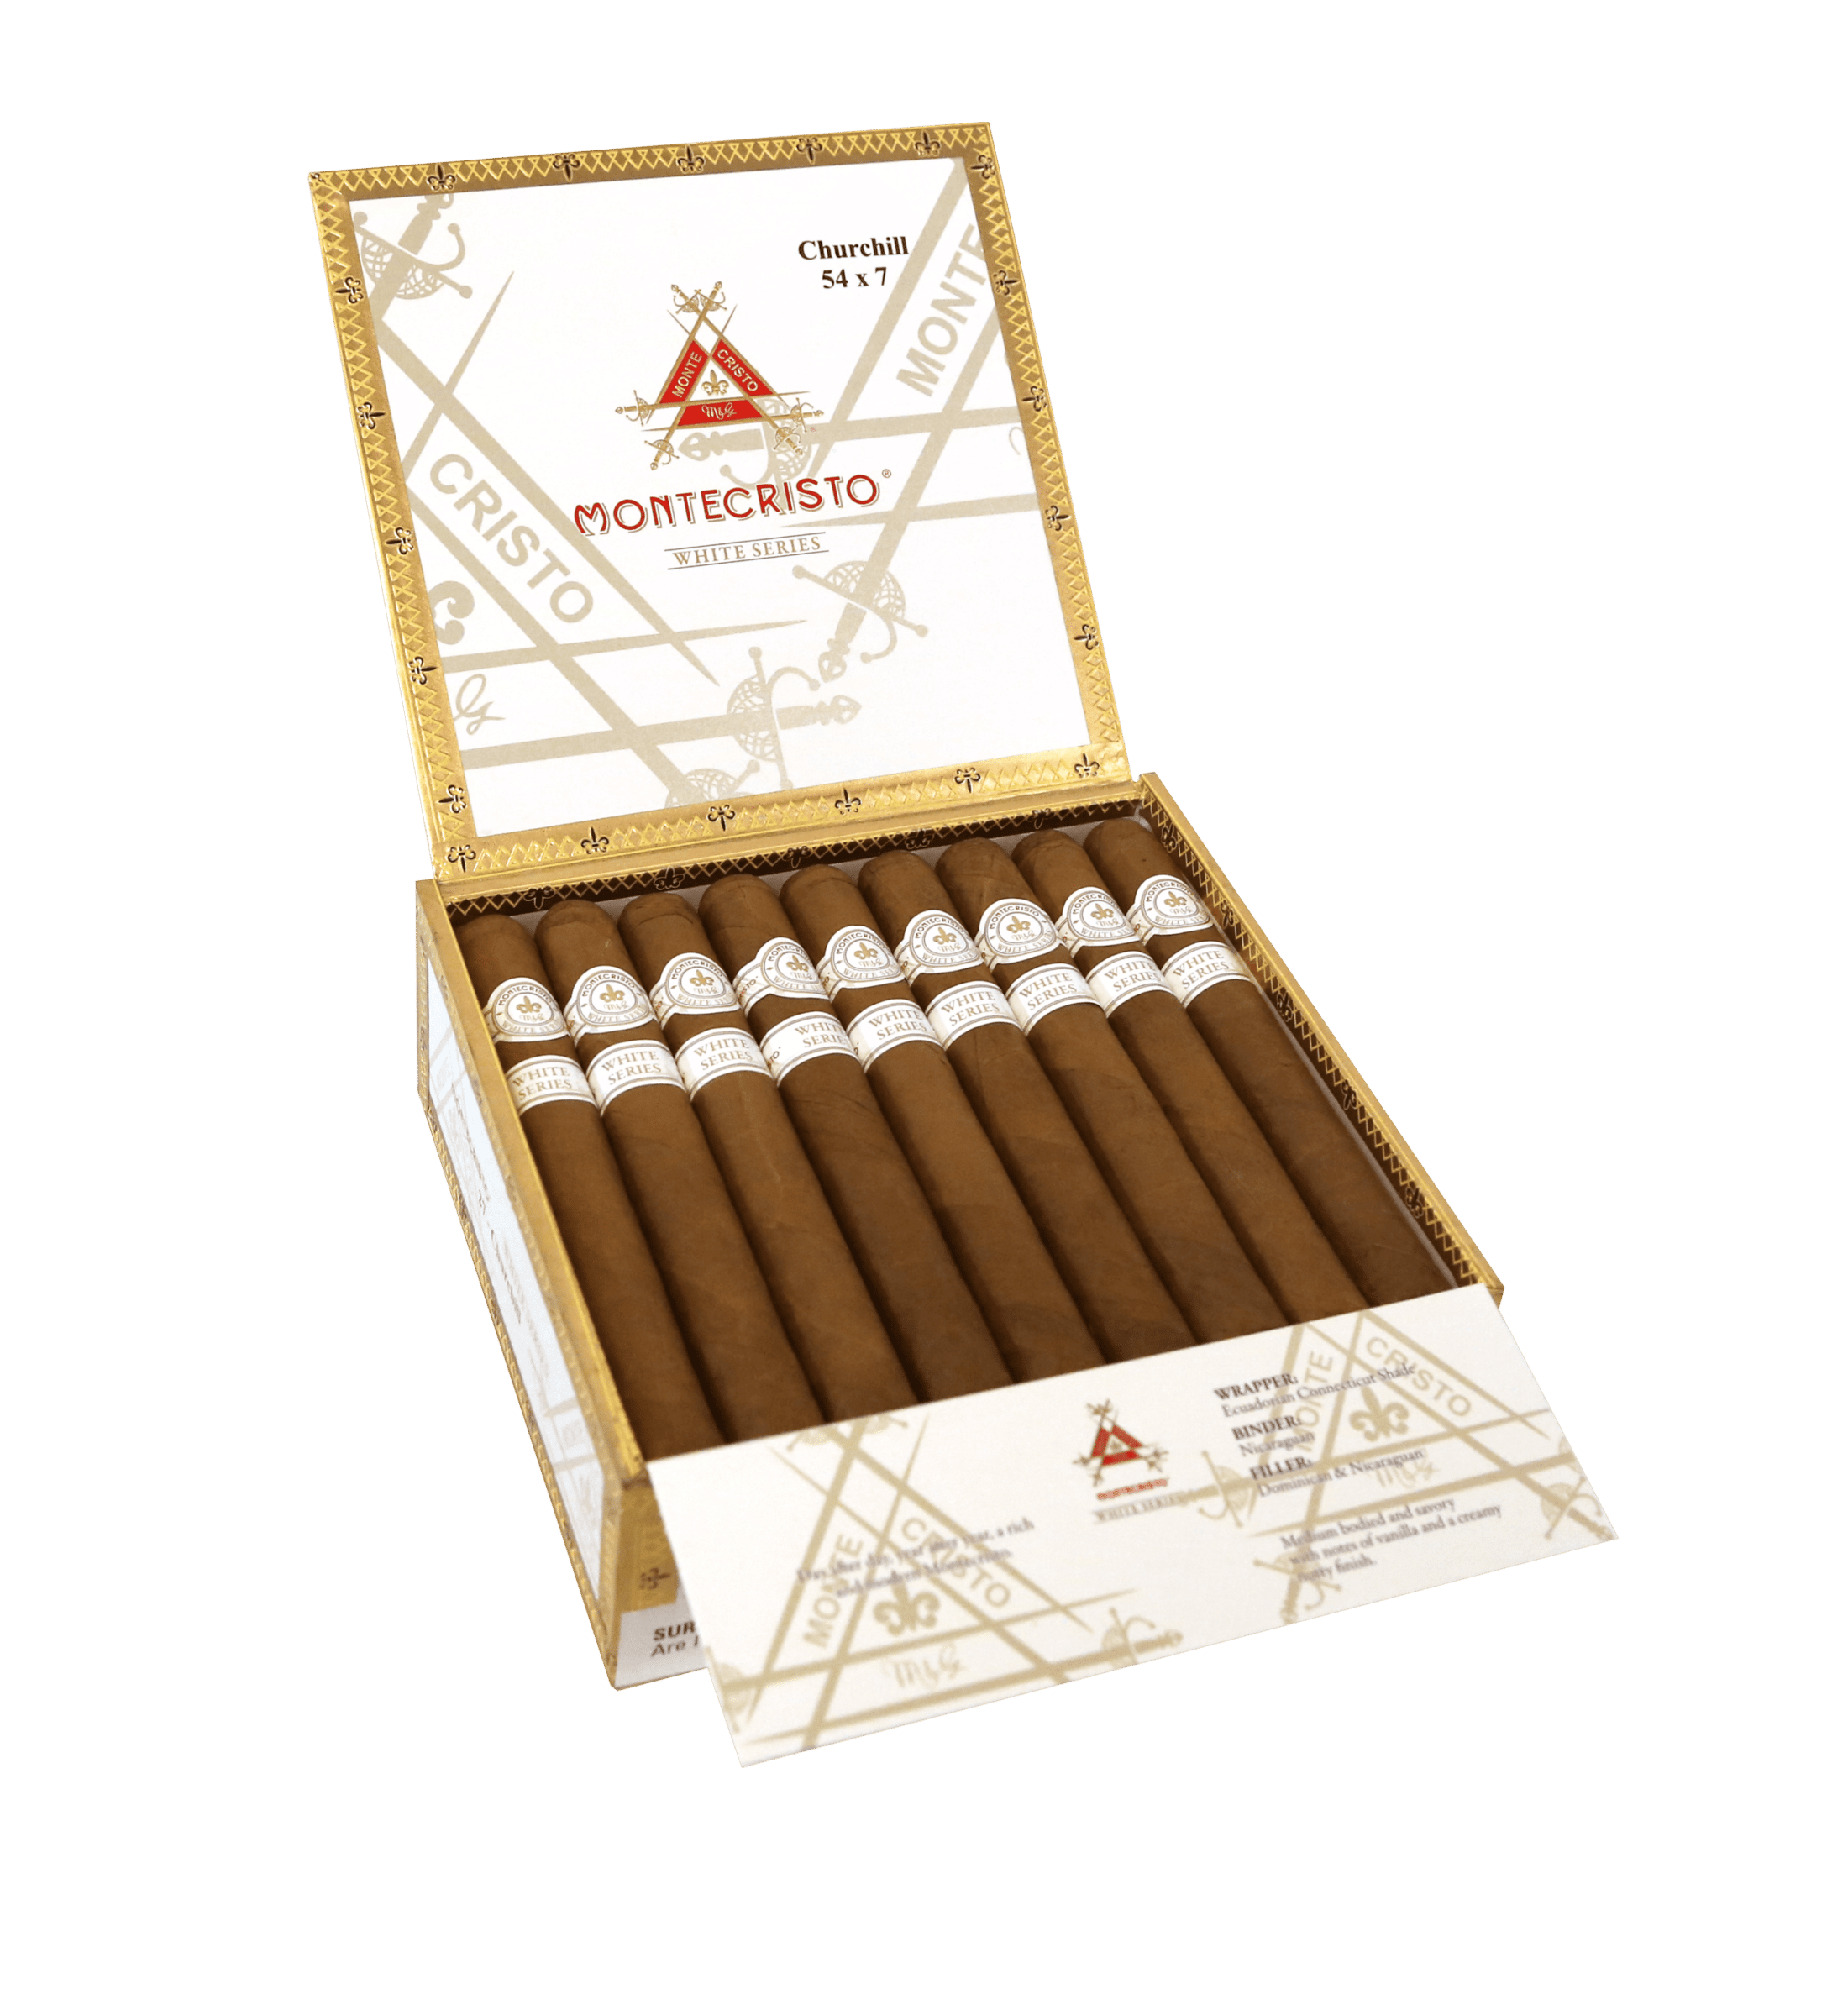 Open box of 27 count Montecristo White Series Churchill cigars